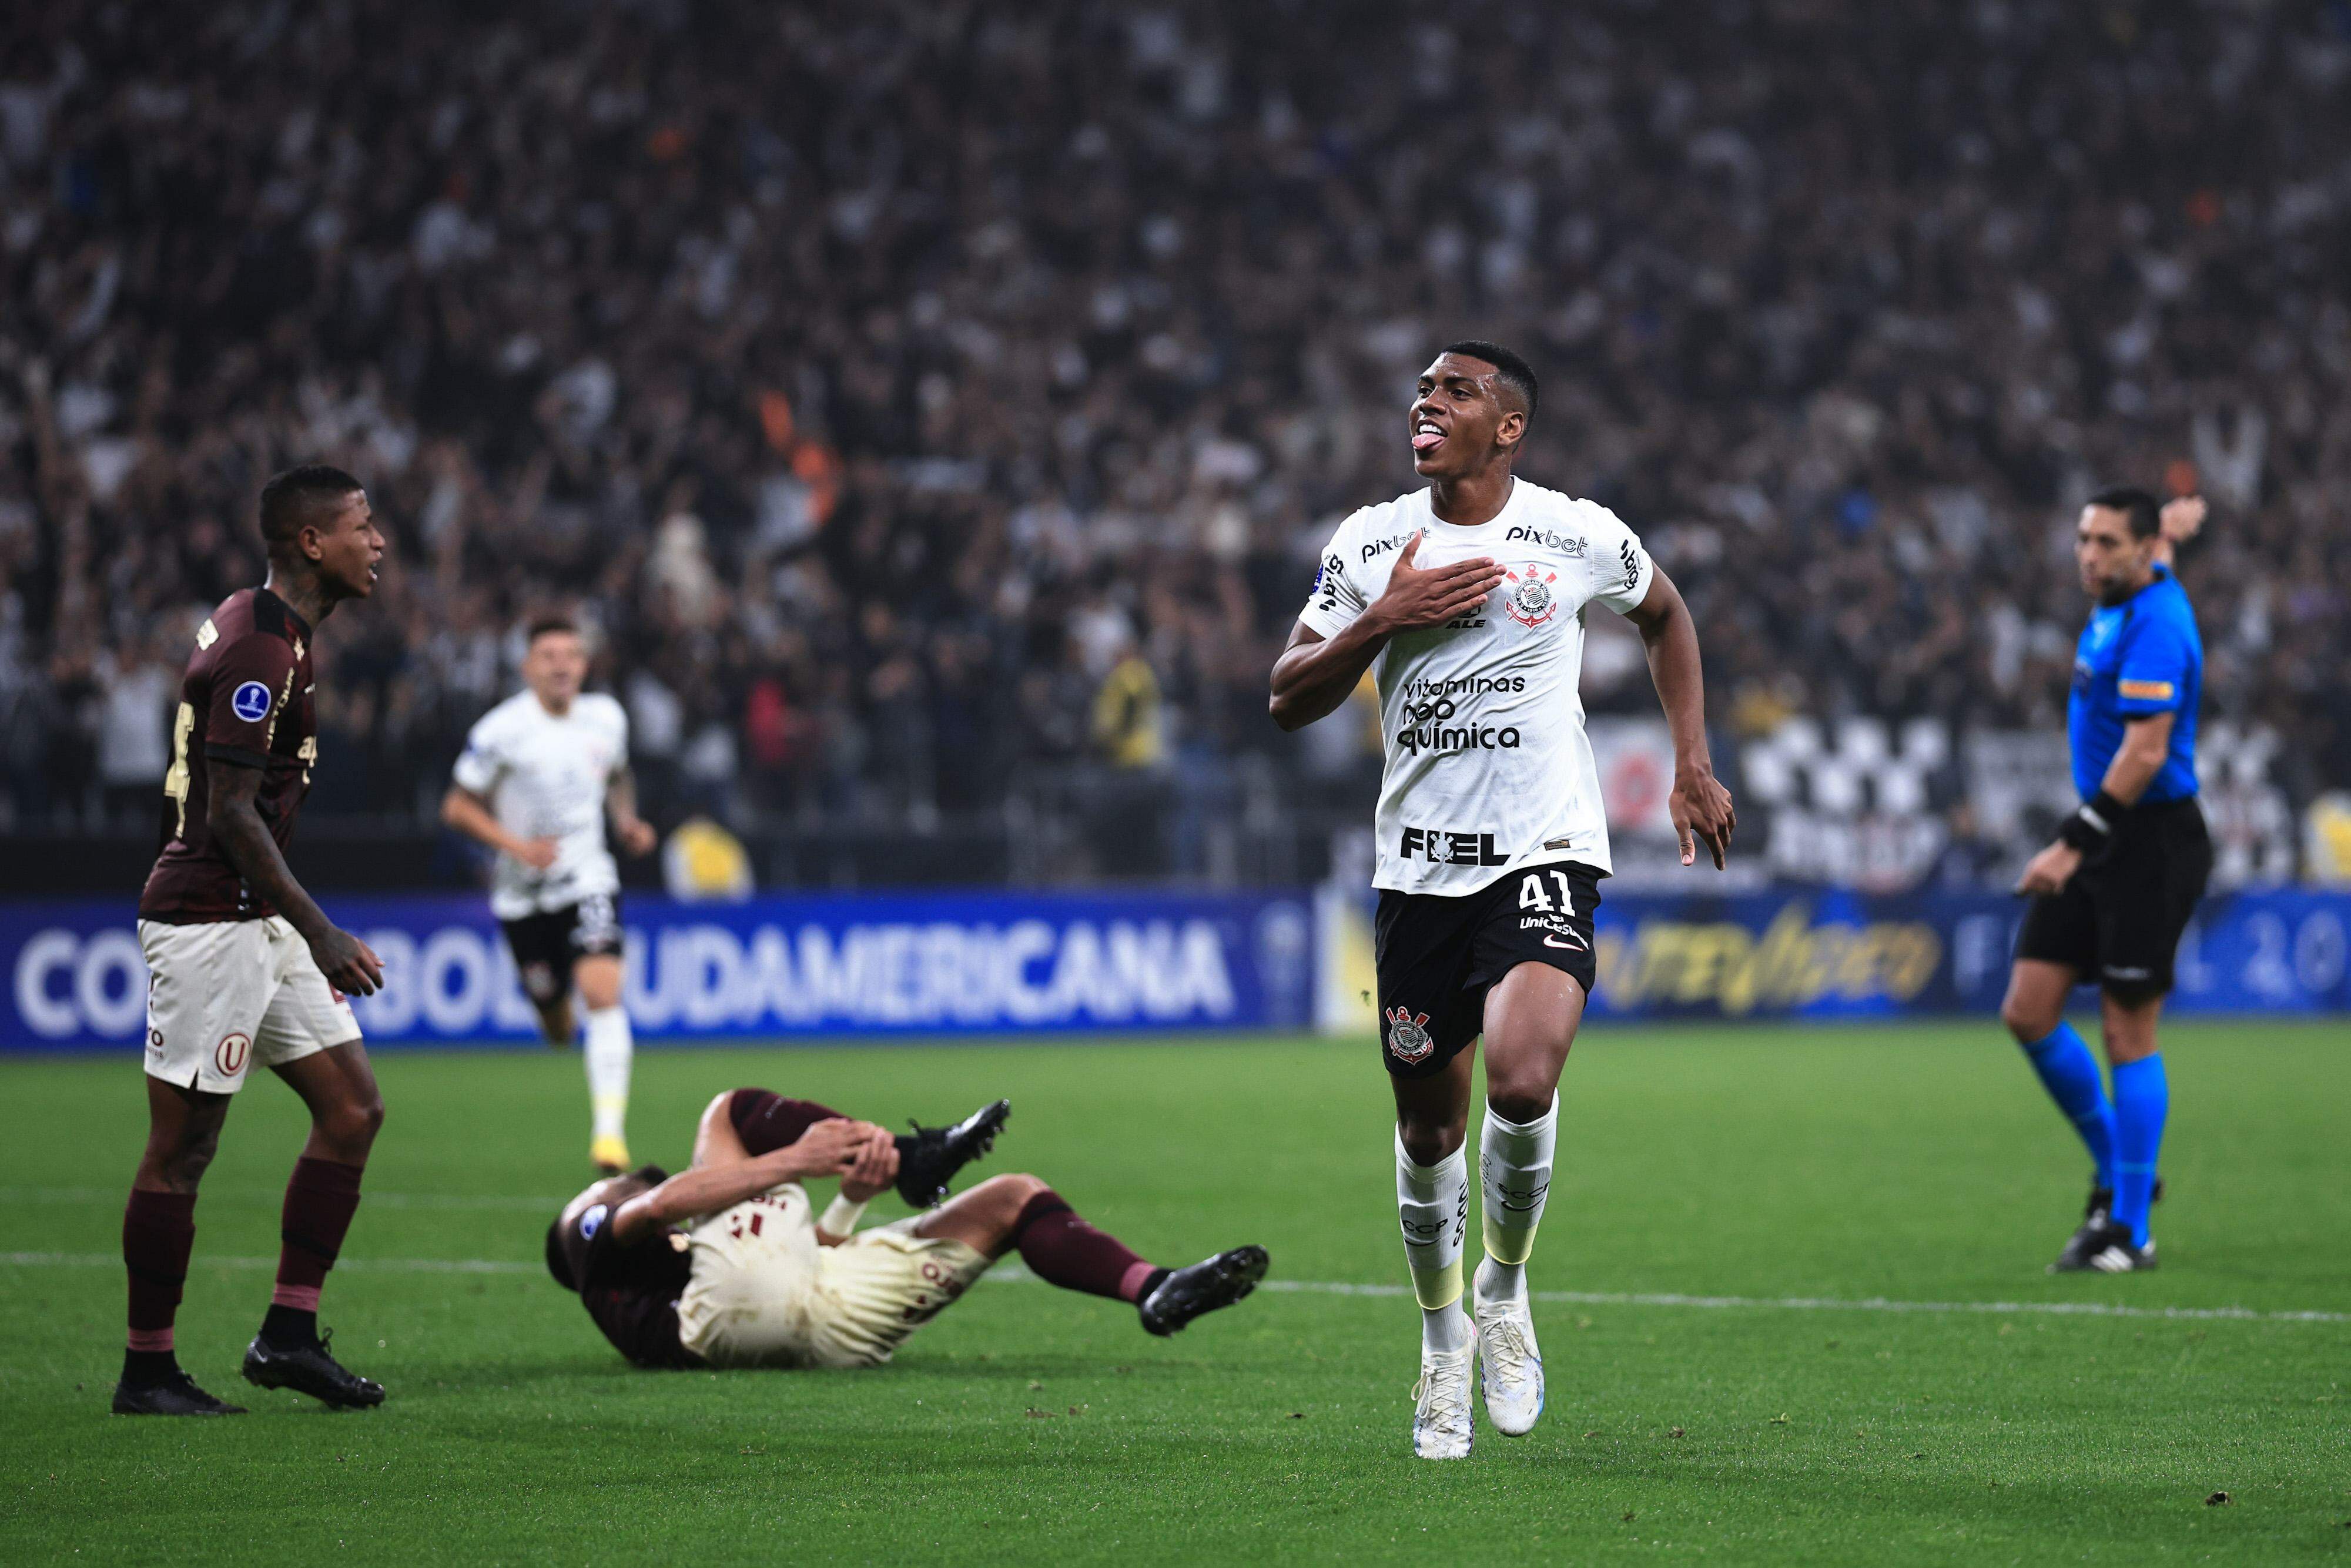 JOGO DAS LENDAS TIMÃO 113 ANOS, Corinthians x Real Madrid